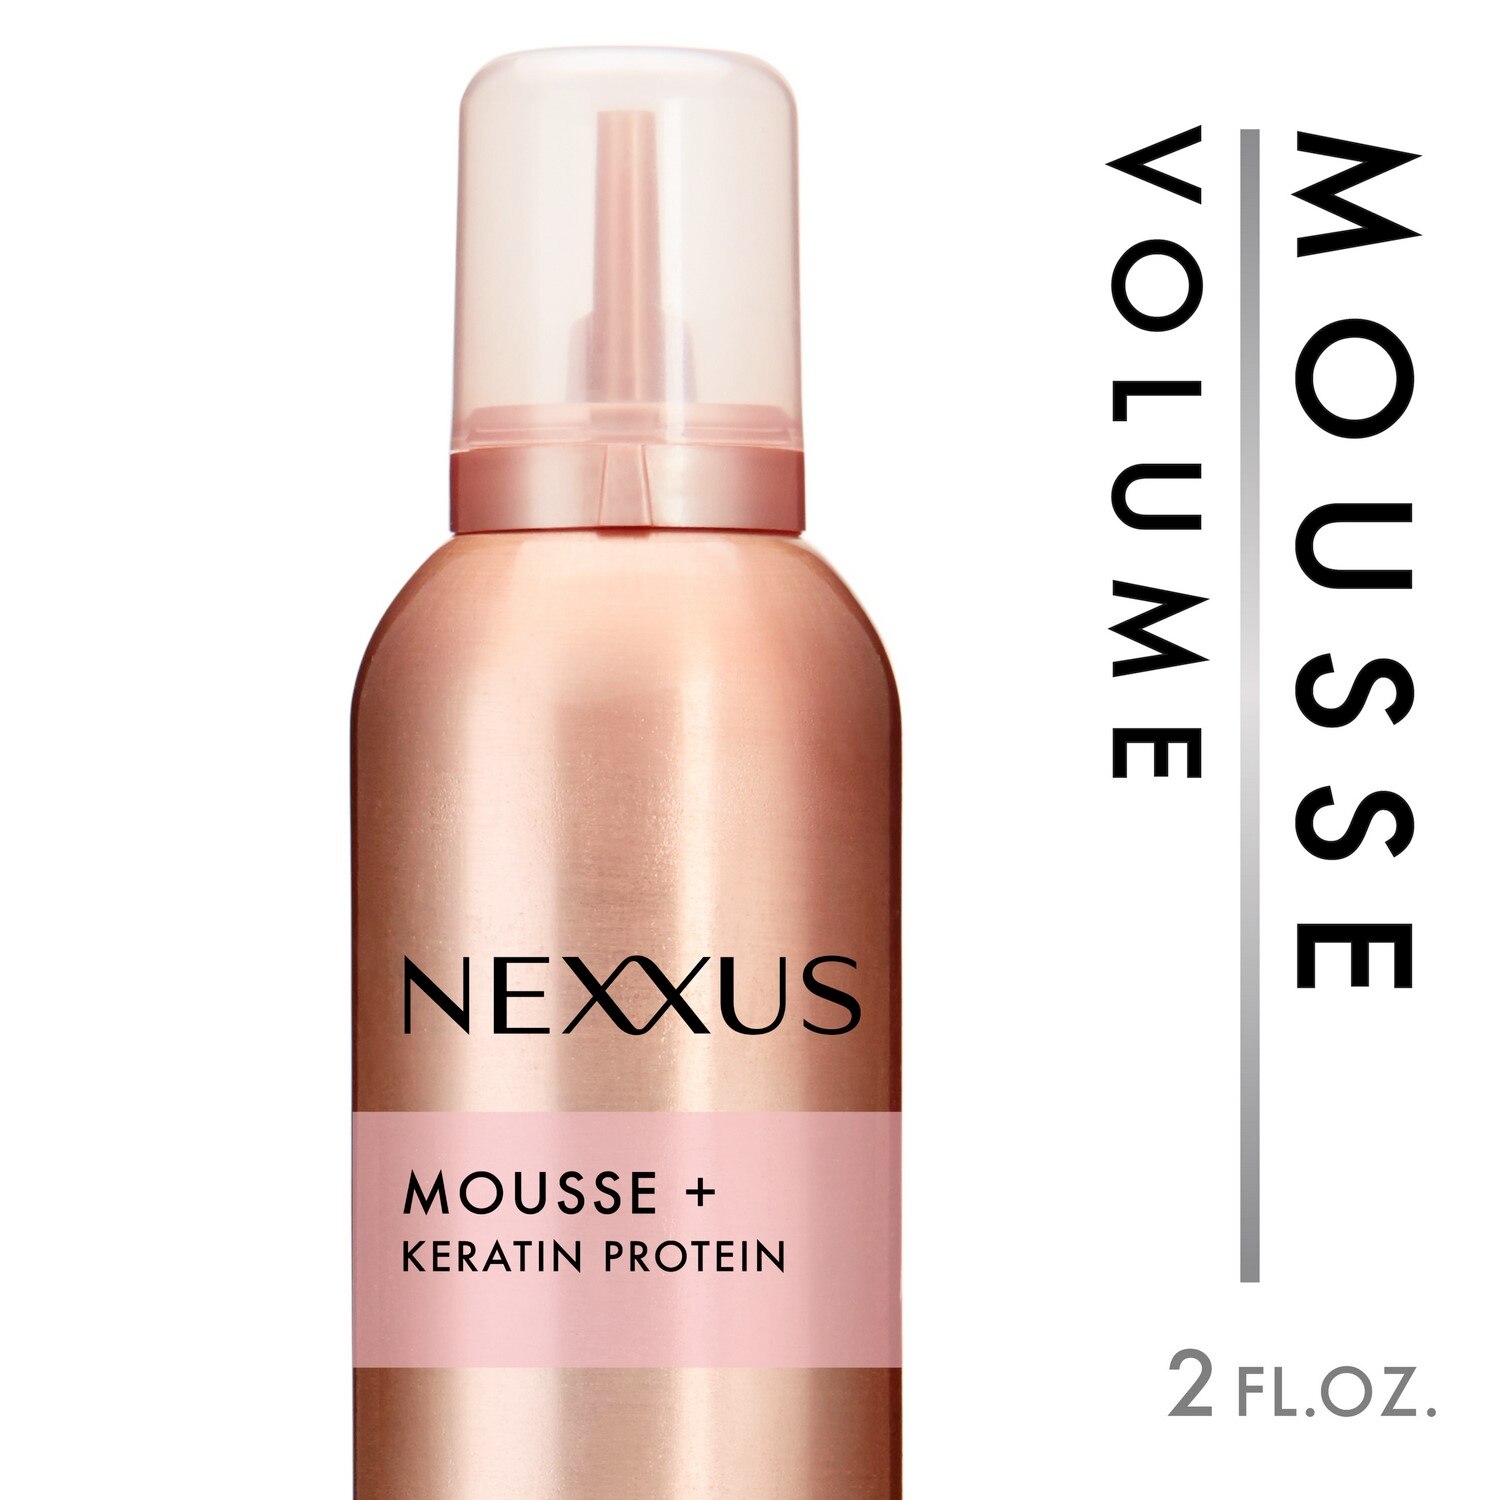 Nexxus Mousse + Volumizing Foam